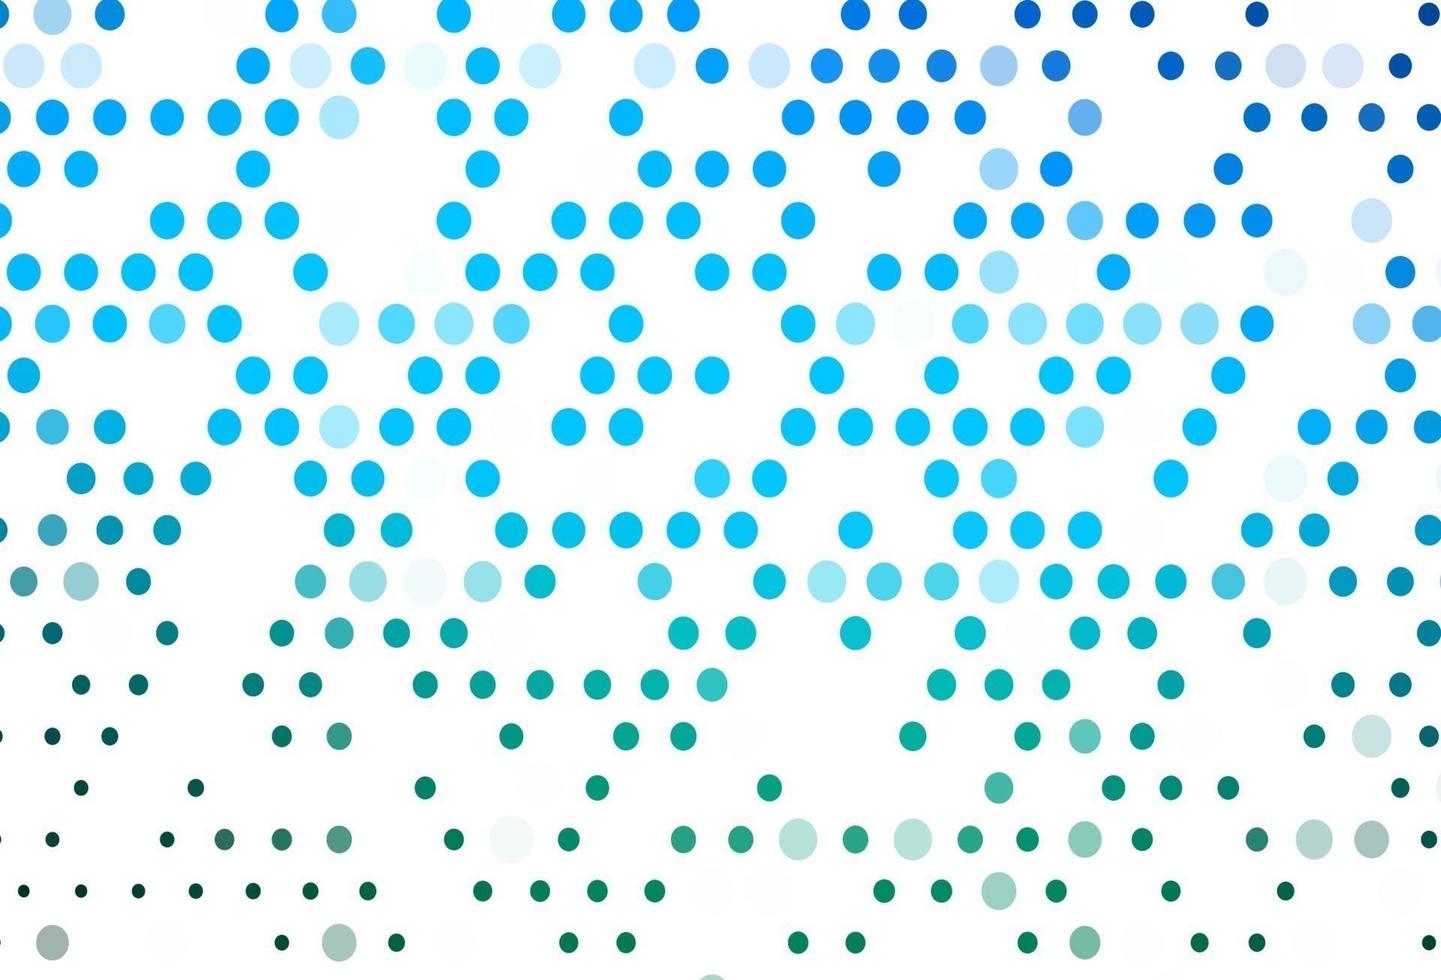 layout de vetor azul claro e verde com formas de círculo.